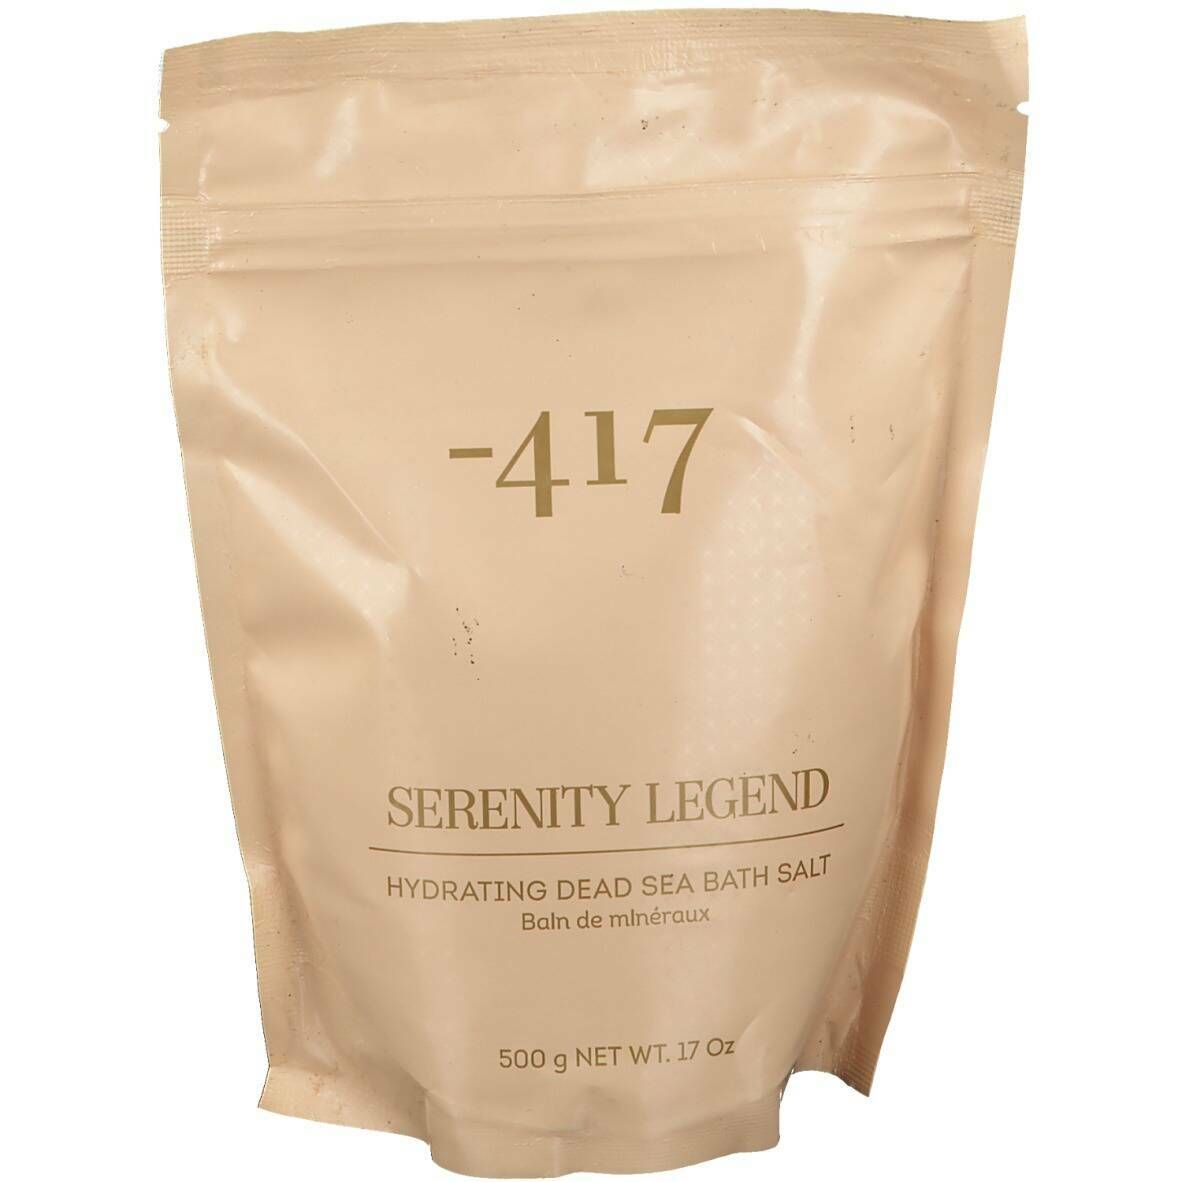 -417 Serenity Legend Hydrating Dead Sea Bath Salt